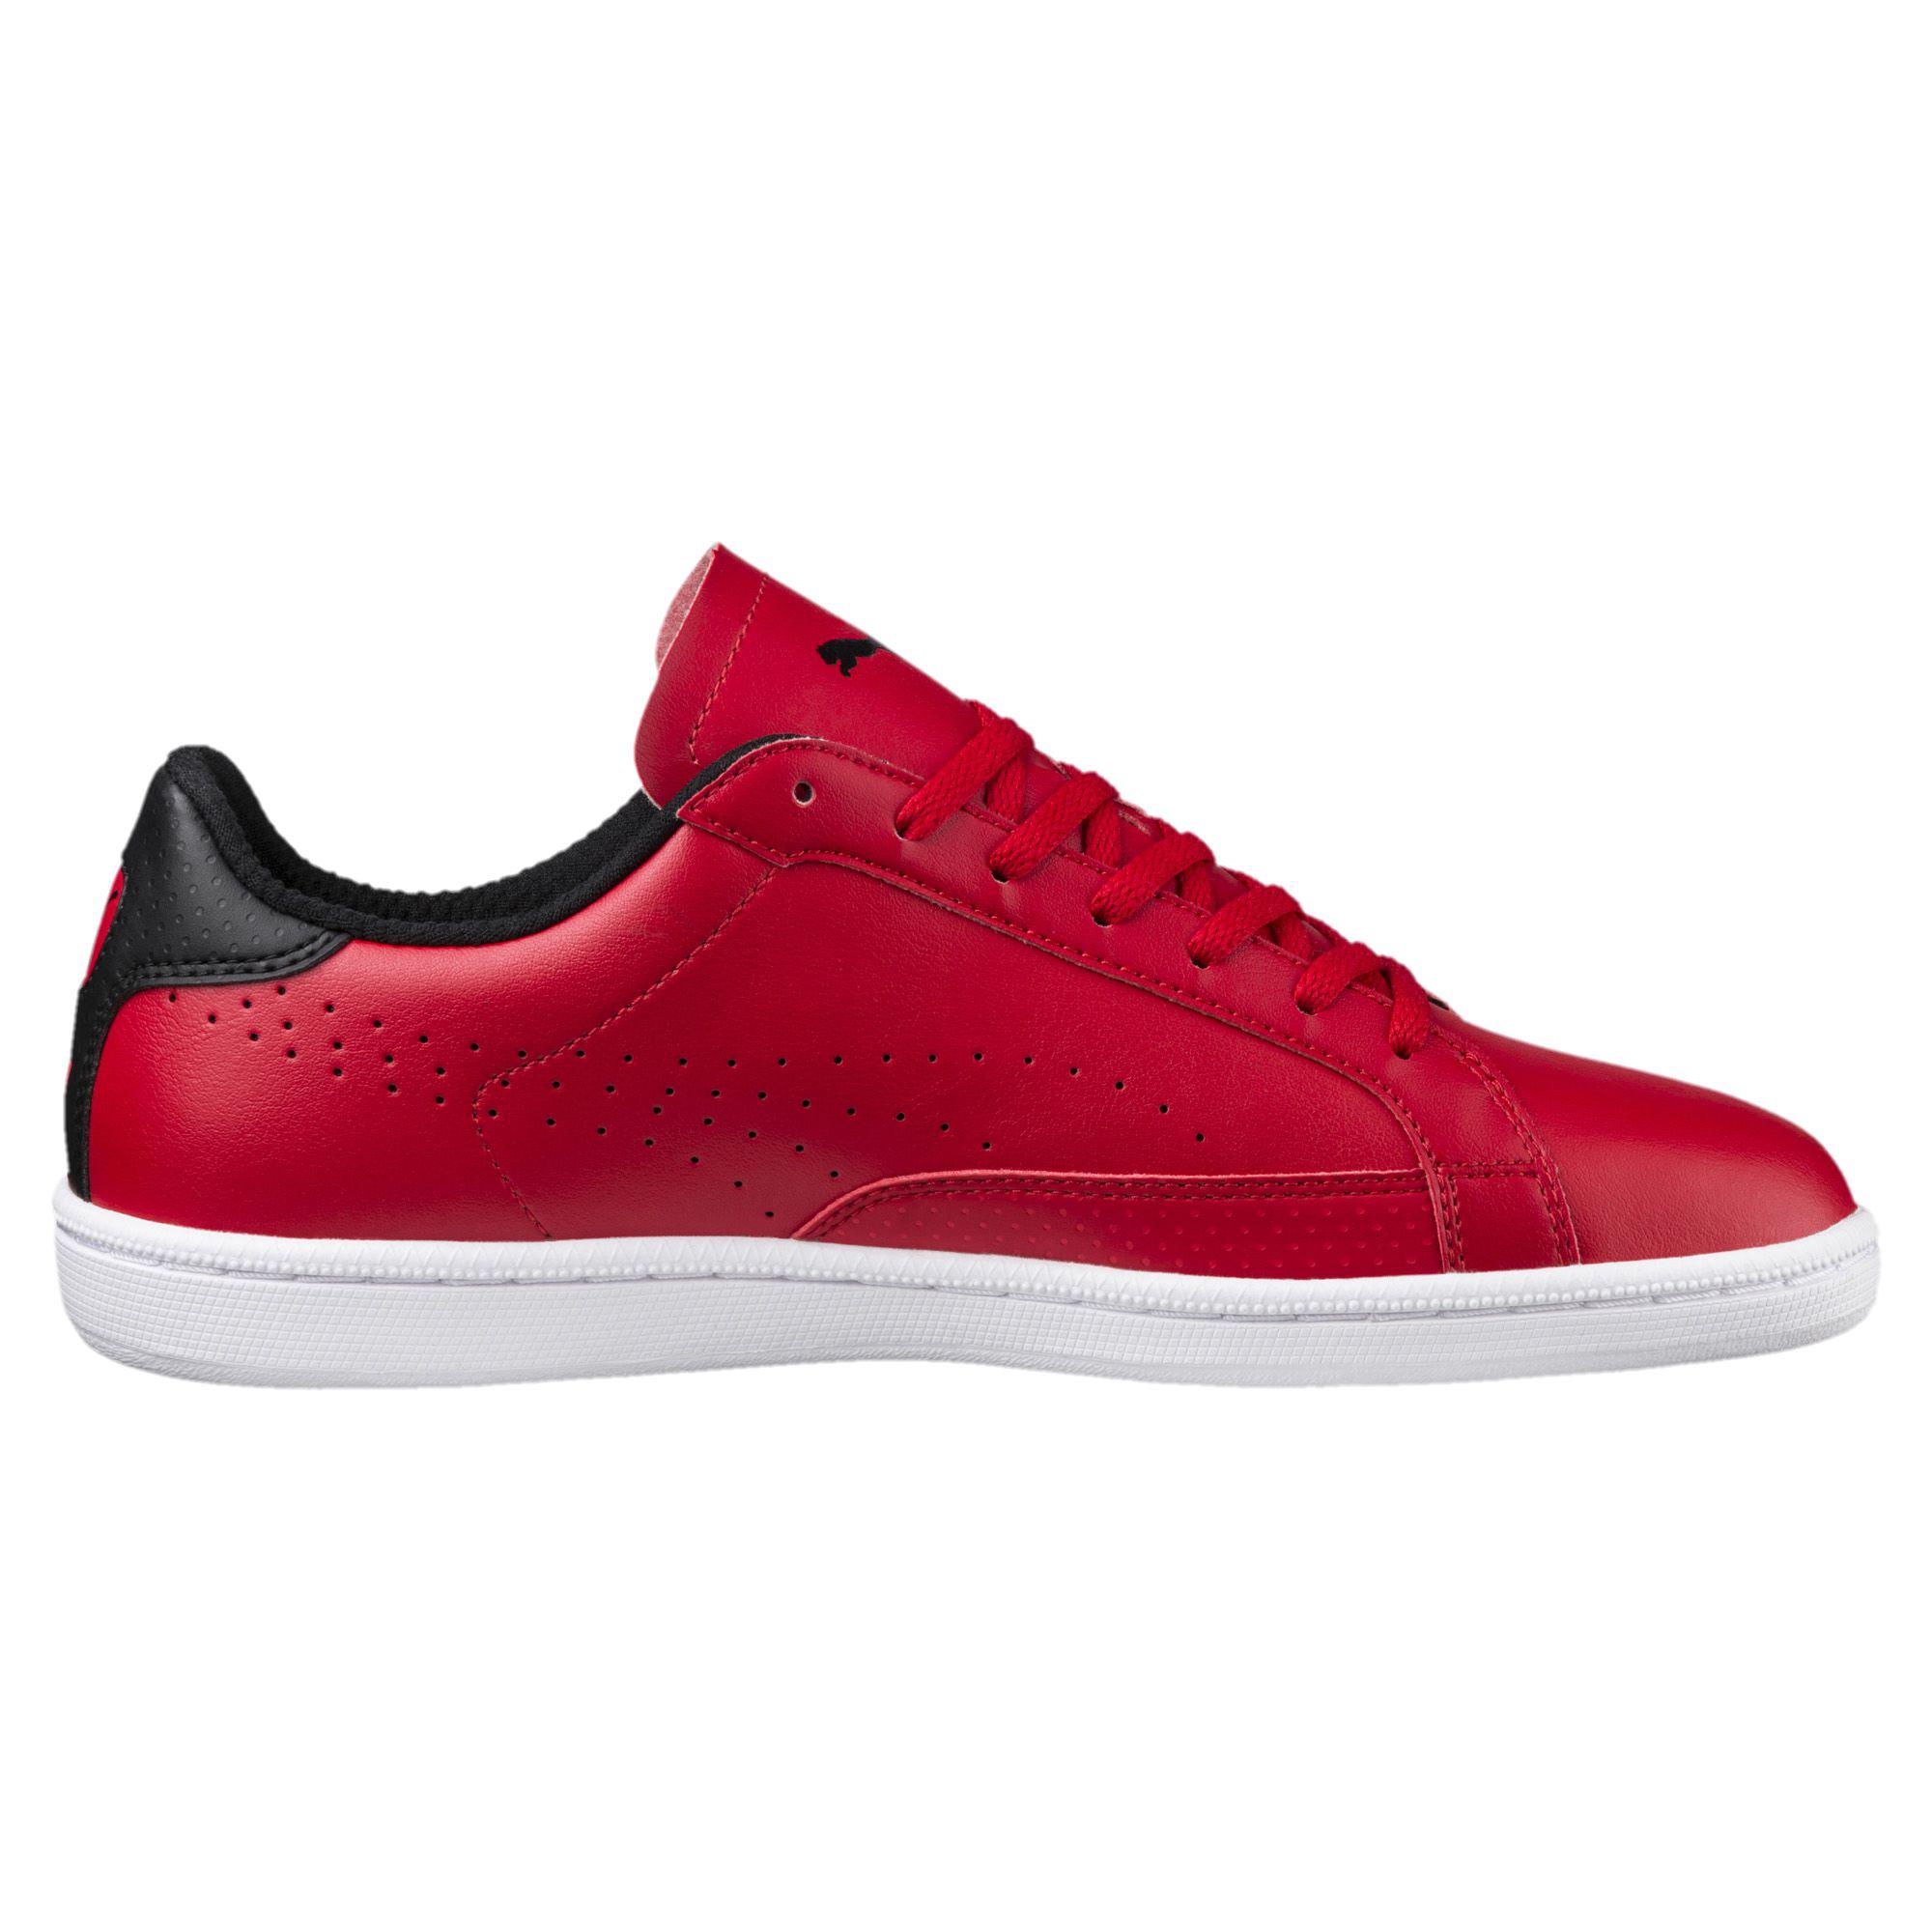 puma ferrari shoes high top red